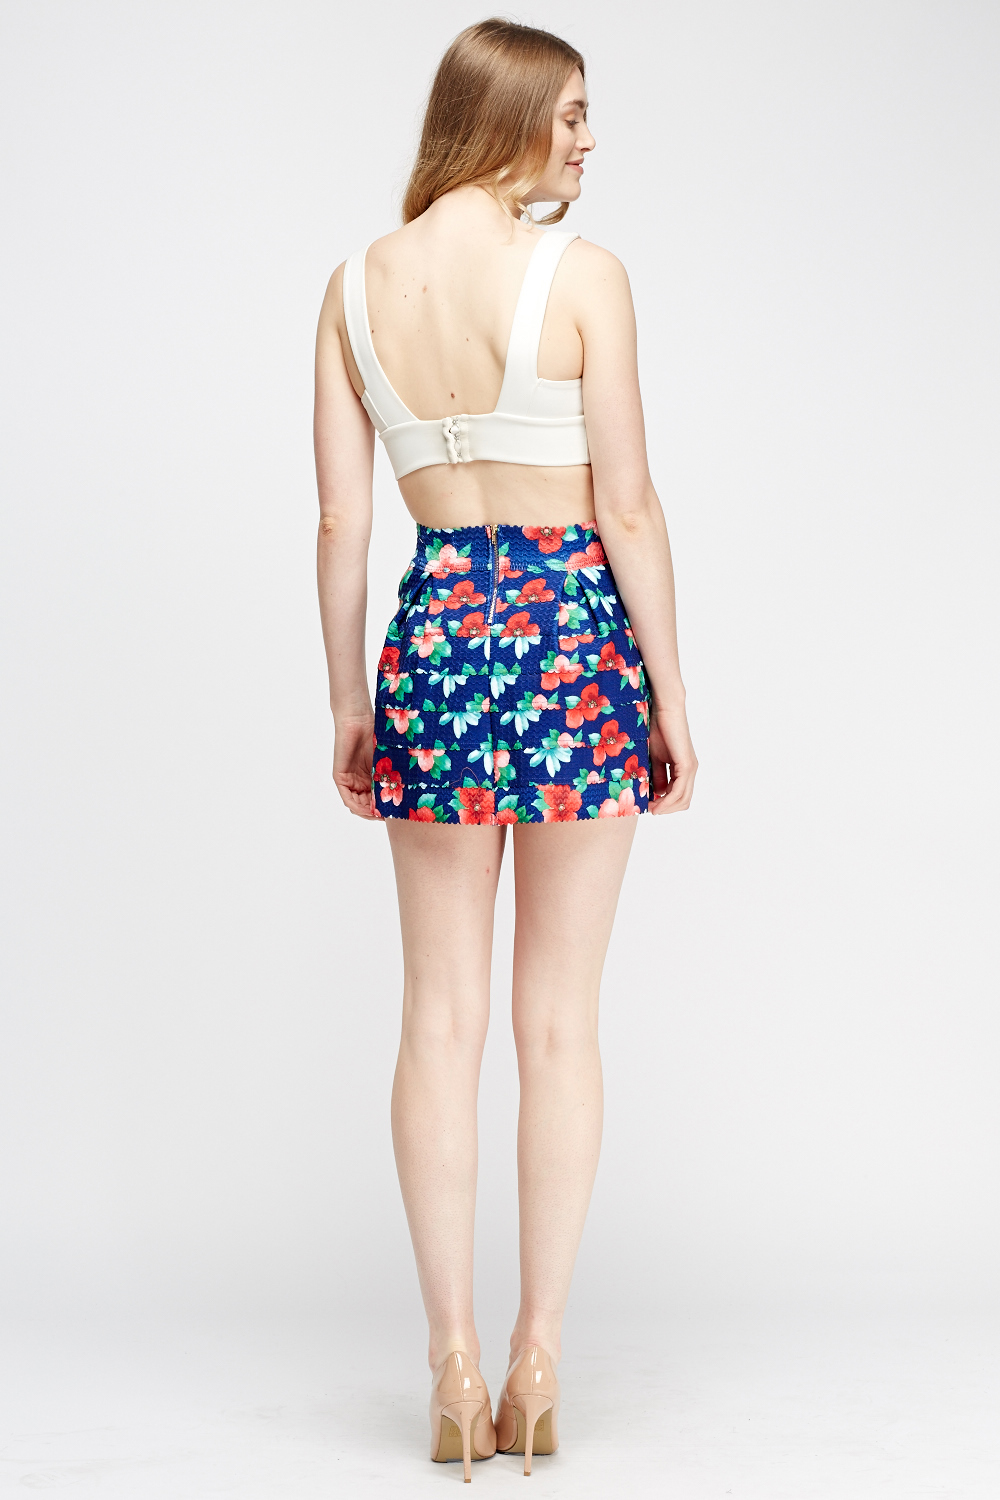 Floral Mini Box Pleat Skirt - Just $7